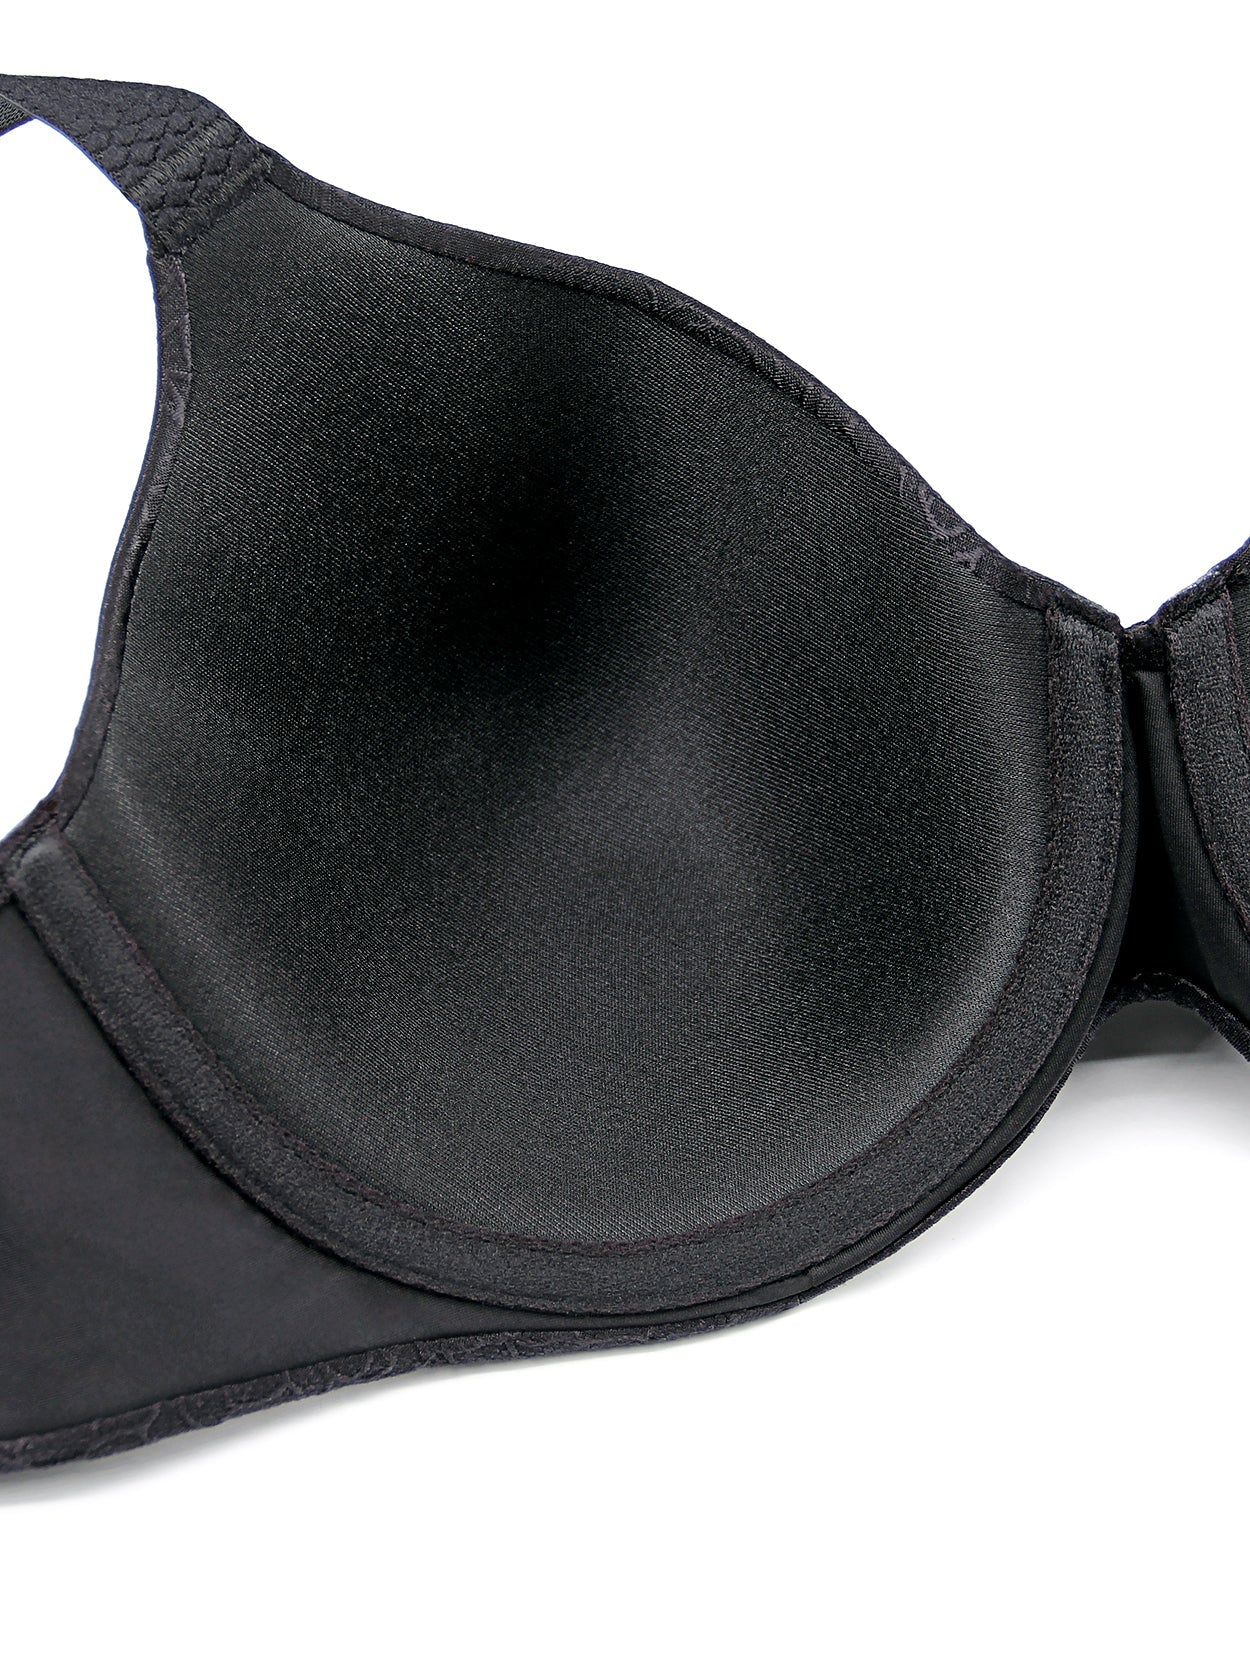 Eashery Minimizer Bras for Women Full Coverage Women's Love The Lift Demi  Strapless Multiway Bra Black X-Large